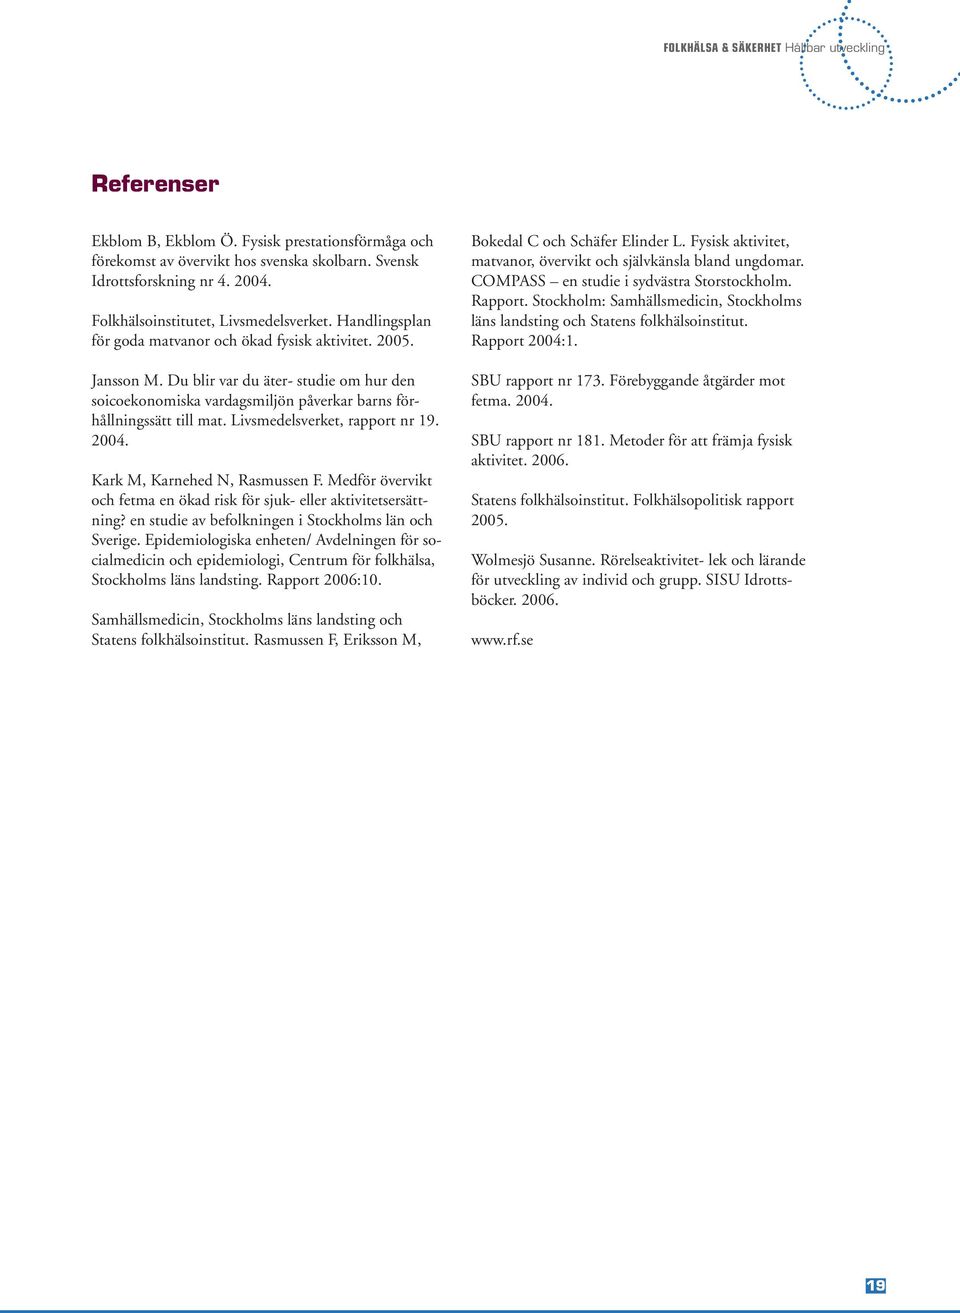 Livsmedelsverket, rapport nr 19. 2004. Kark M, Karnehed N, Rasmussen F. Medför övervikt och fetma en ökad risk för sjuk- eller aktivitetsersättning?